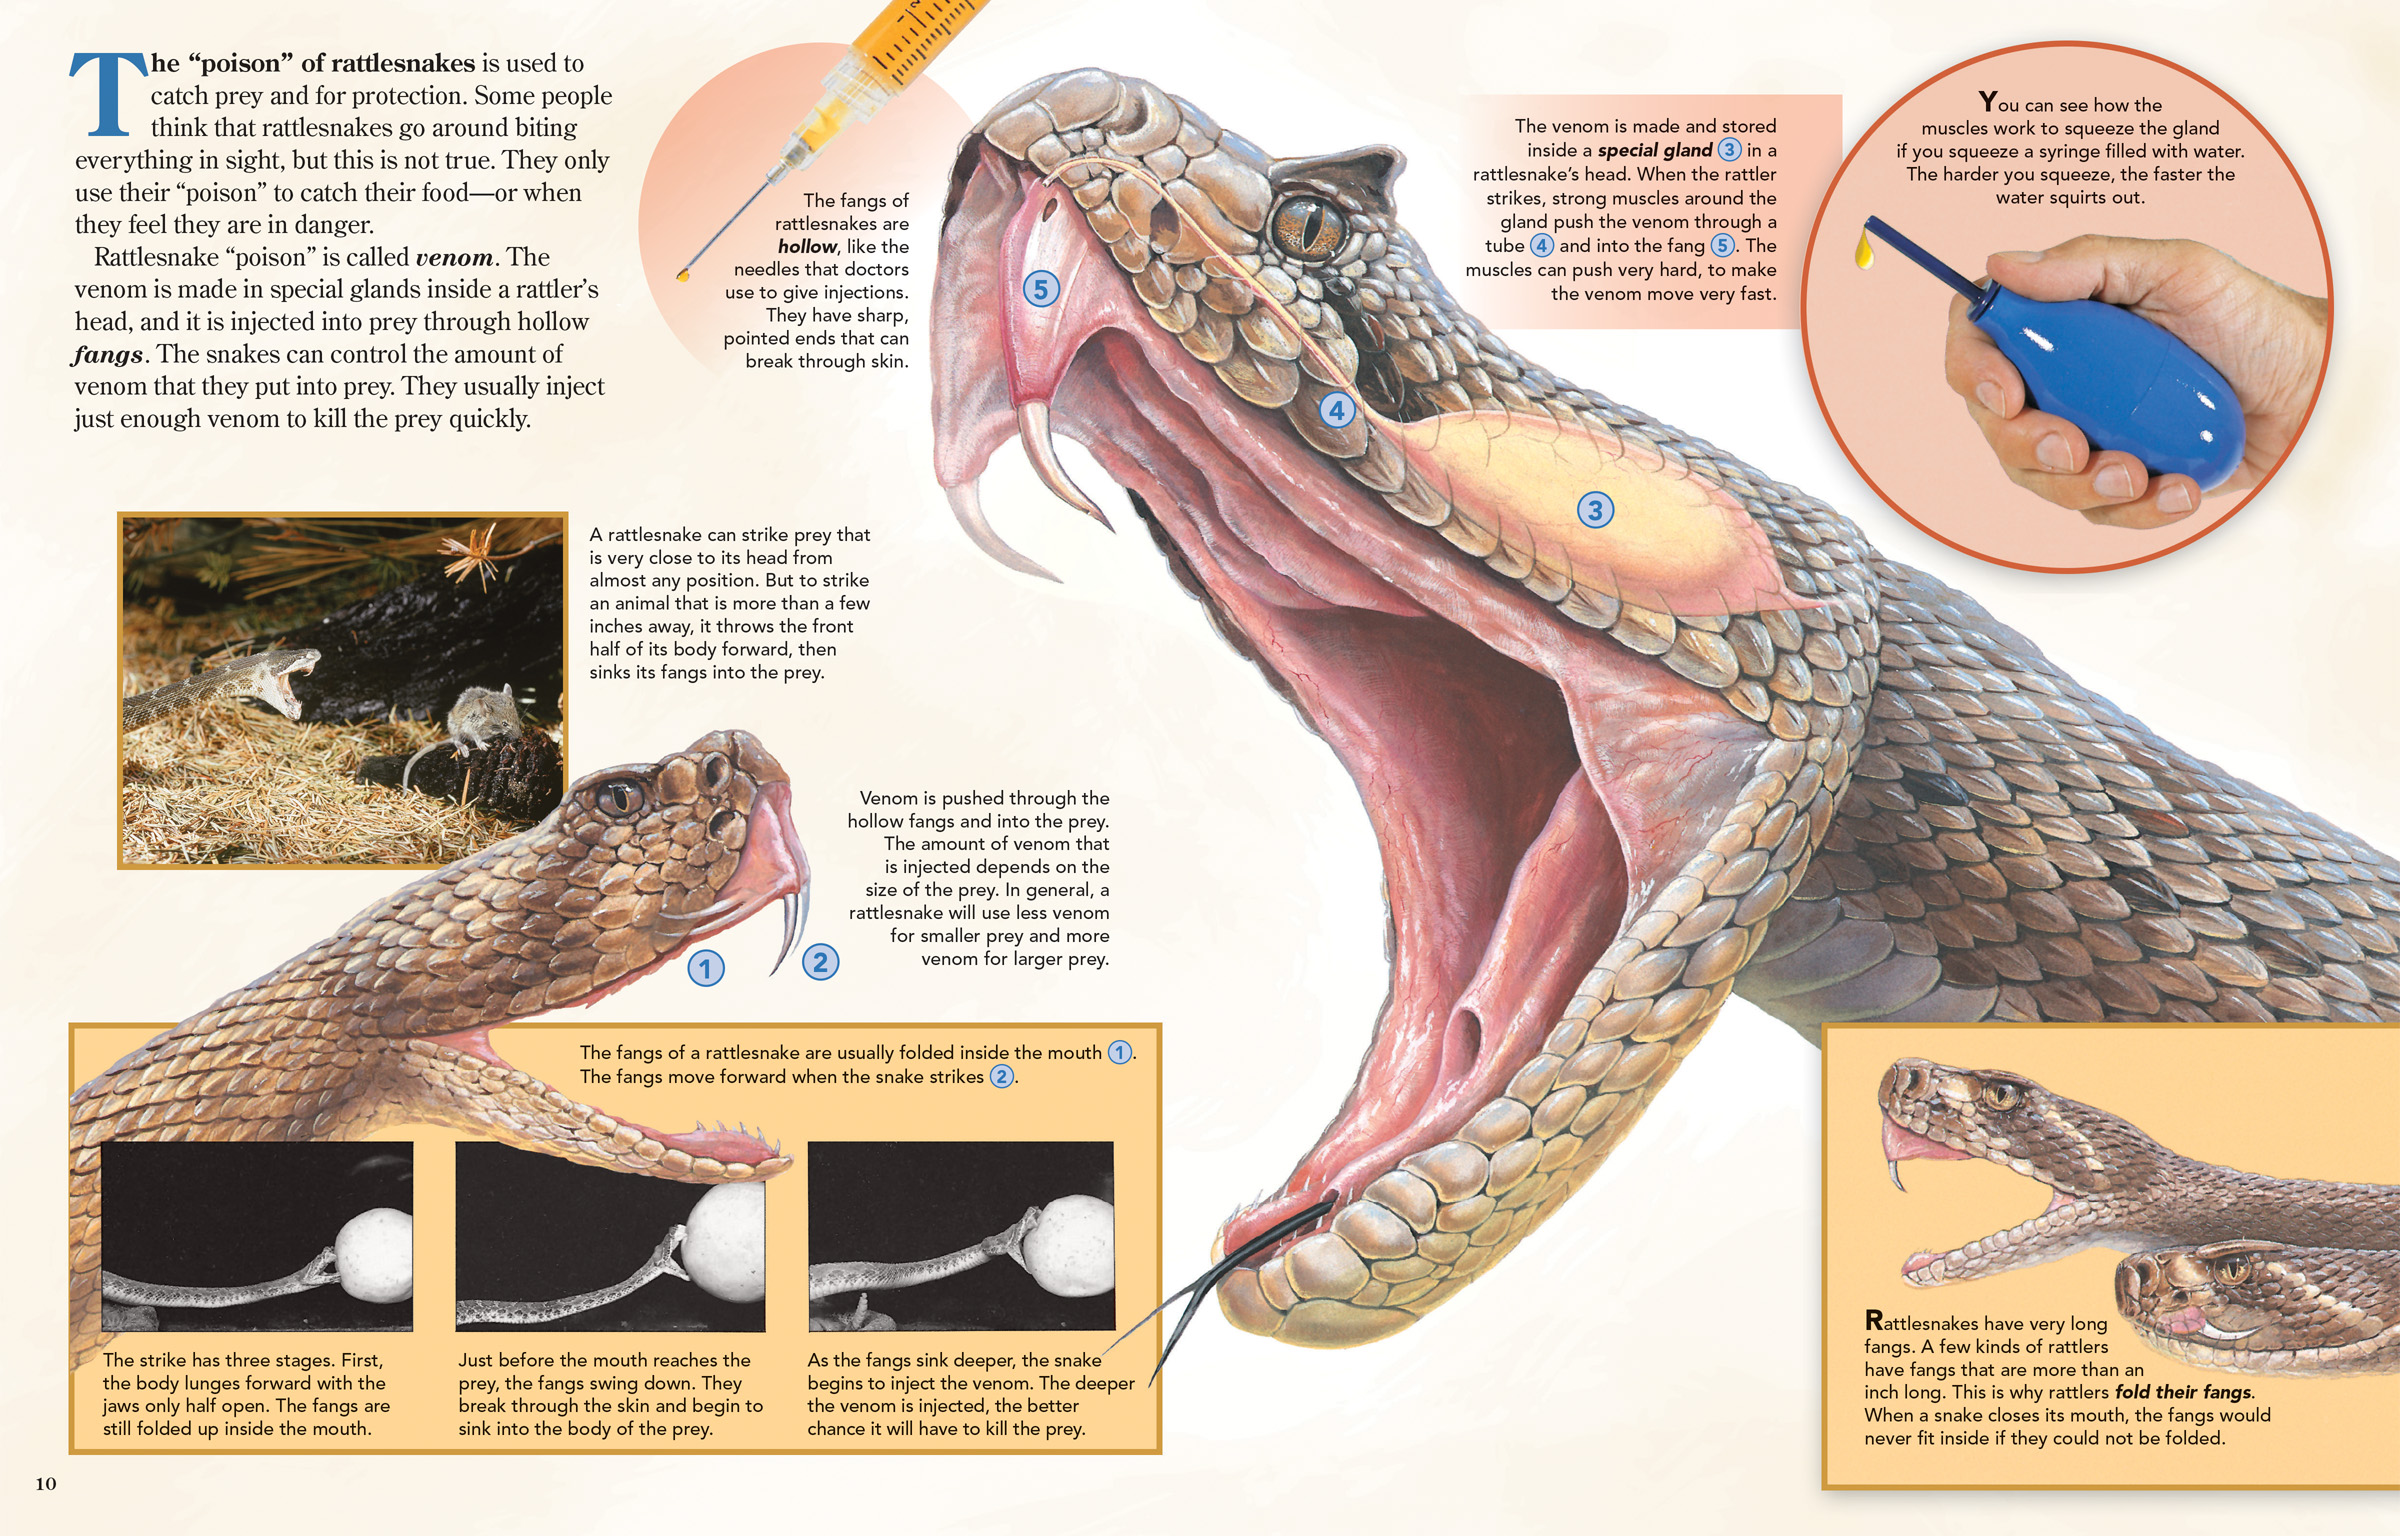 How Fast Does Rattlesnake Venom Work?